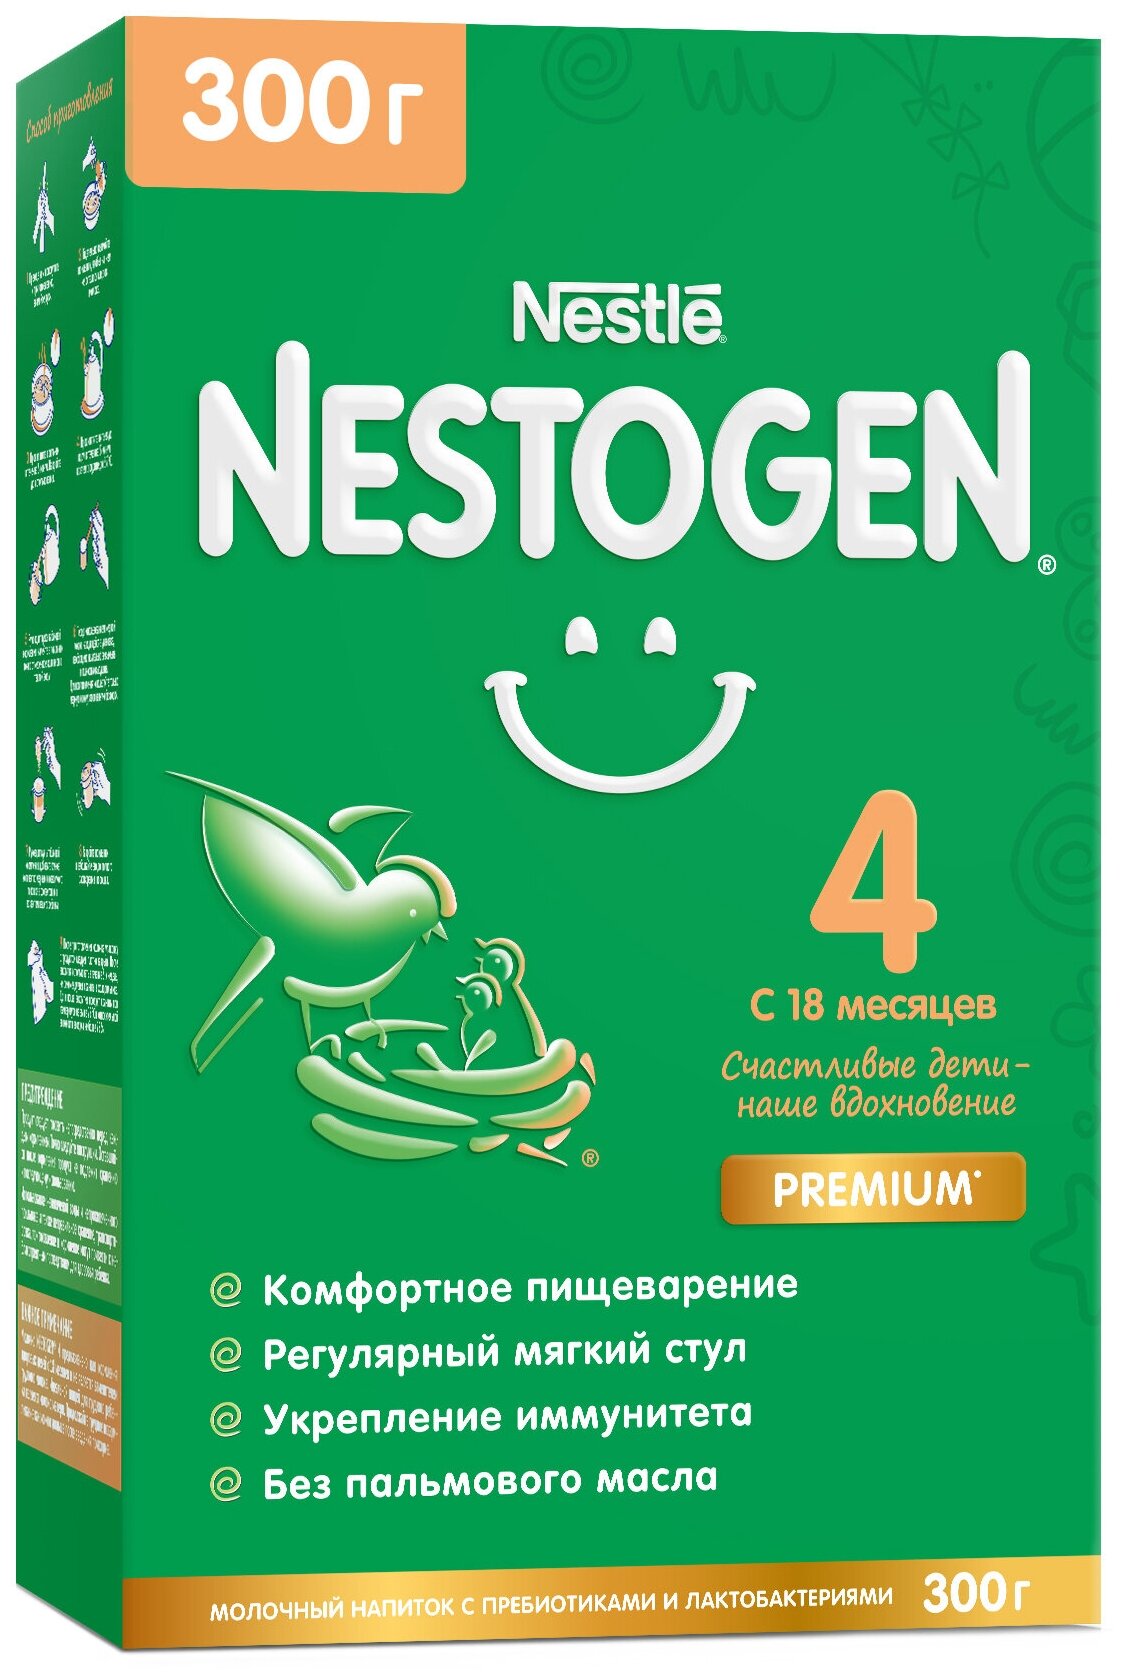 Сухой быстрорастворимый молочный напиток С пребиотиками И лактобактериями «NESTOGEN®4 С 18 месяцев, 300г